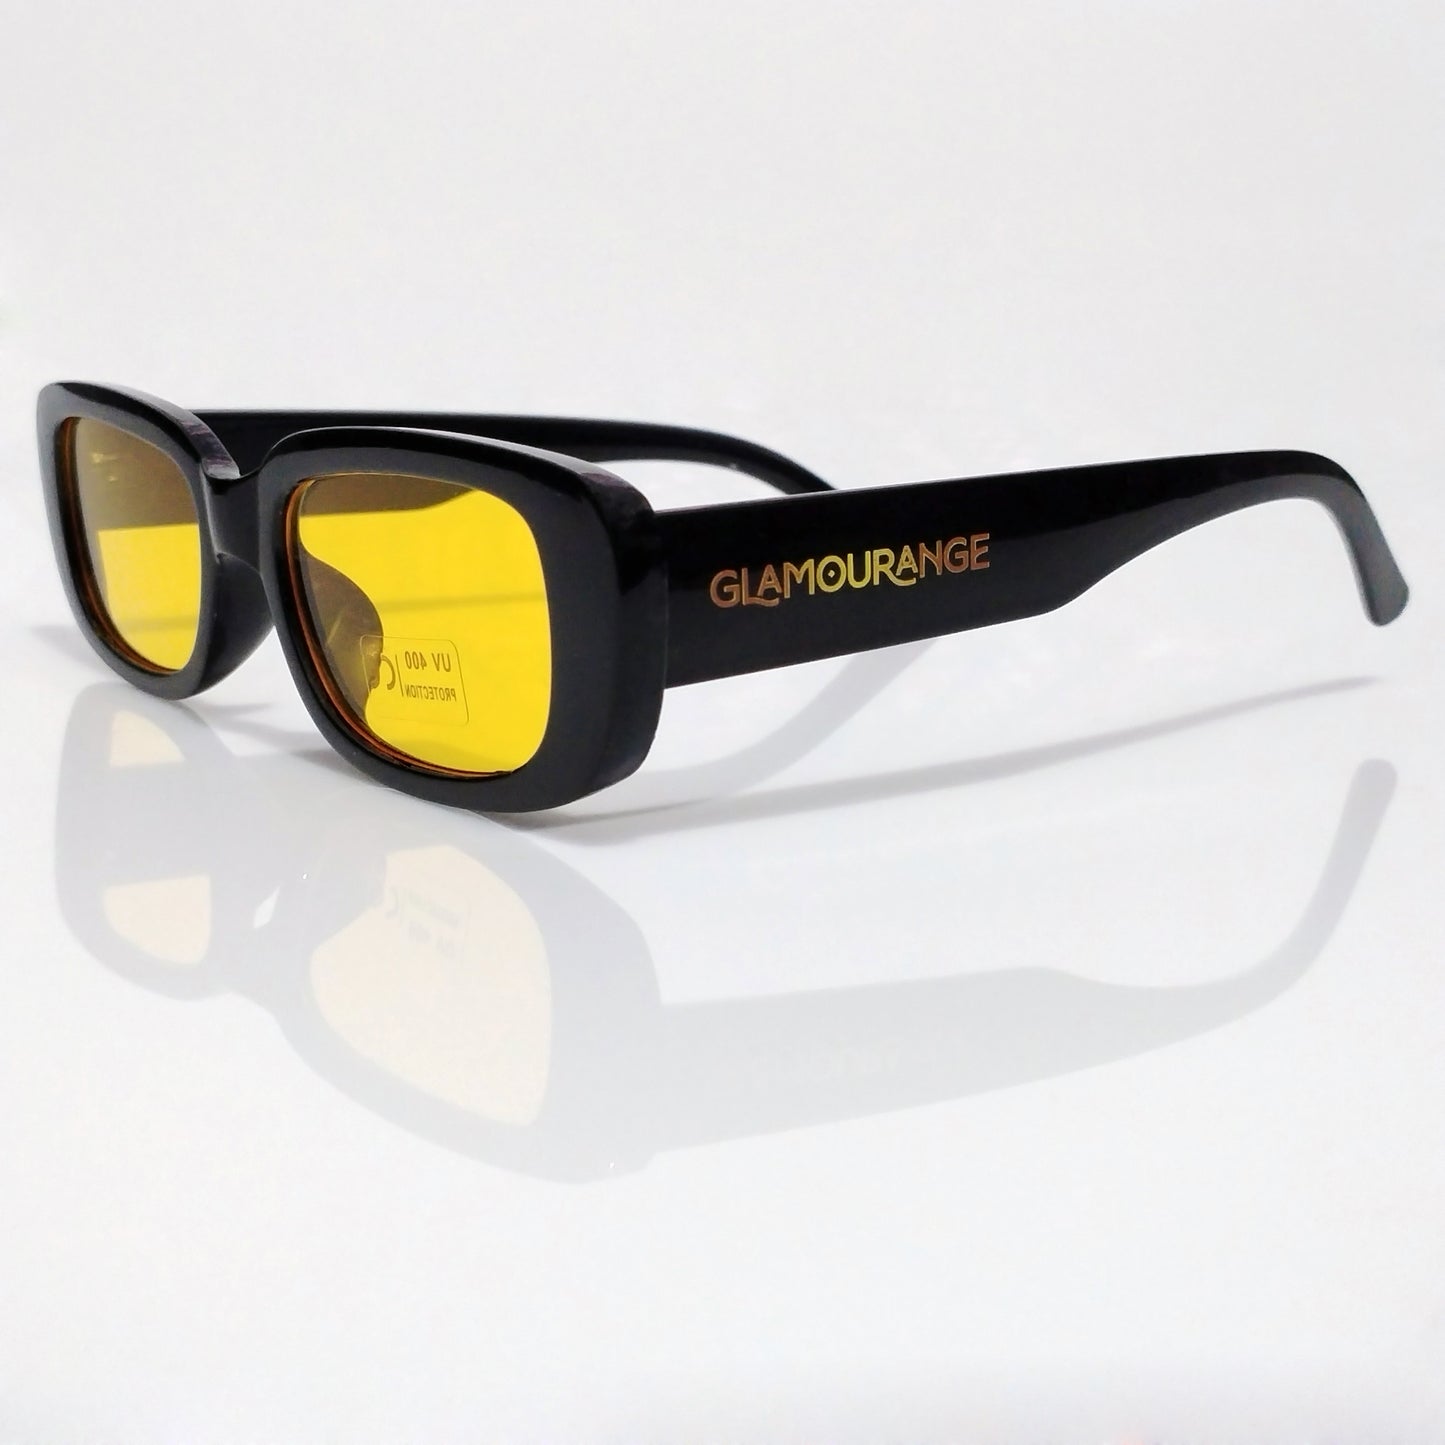 Glamourange Sunglasses Model GR-1004 C4